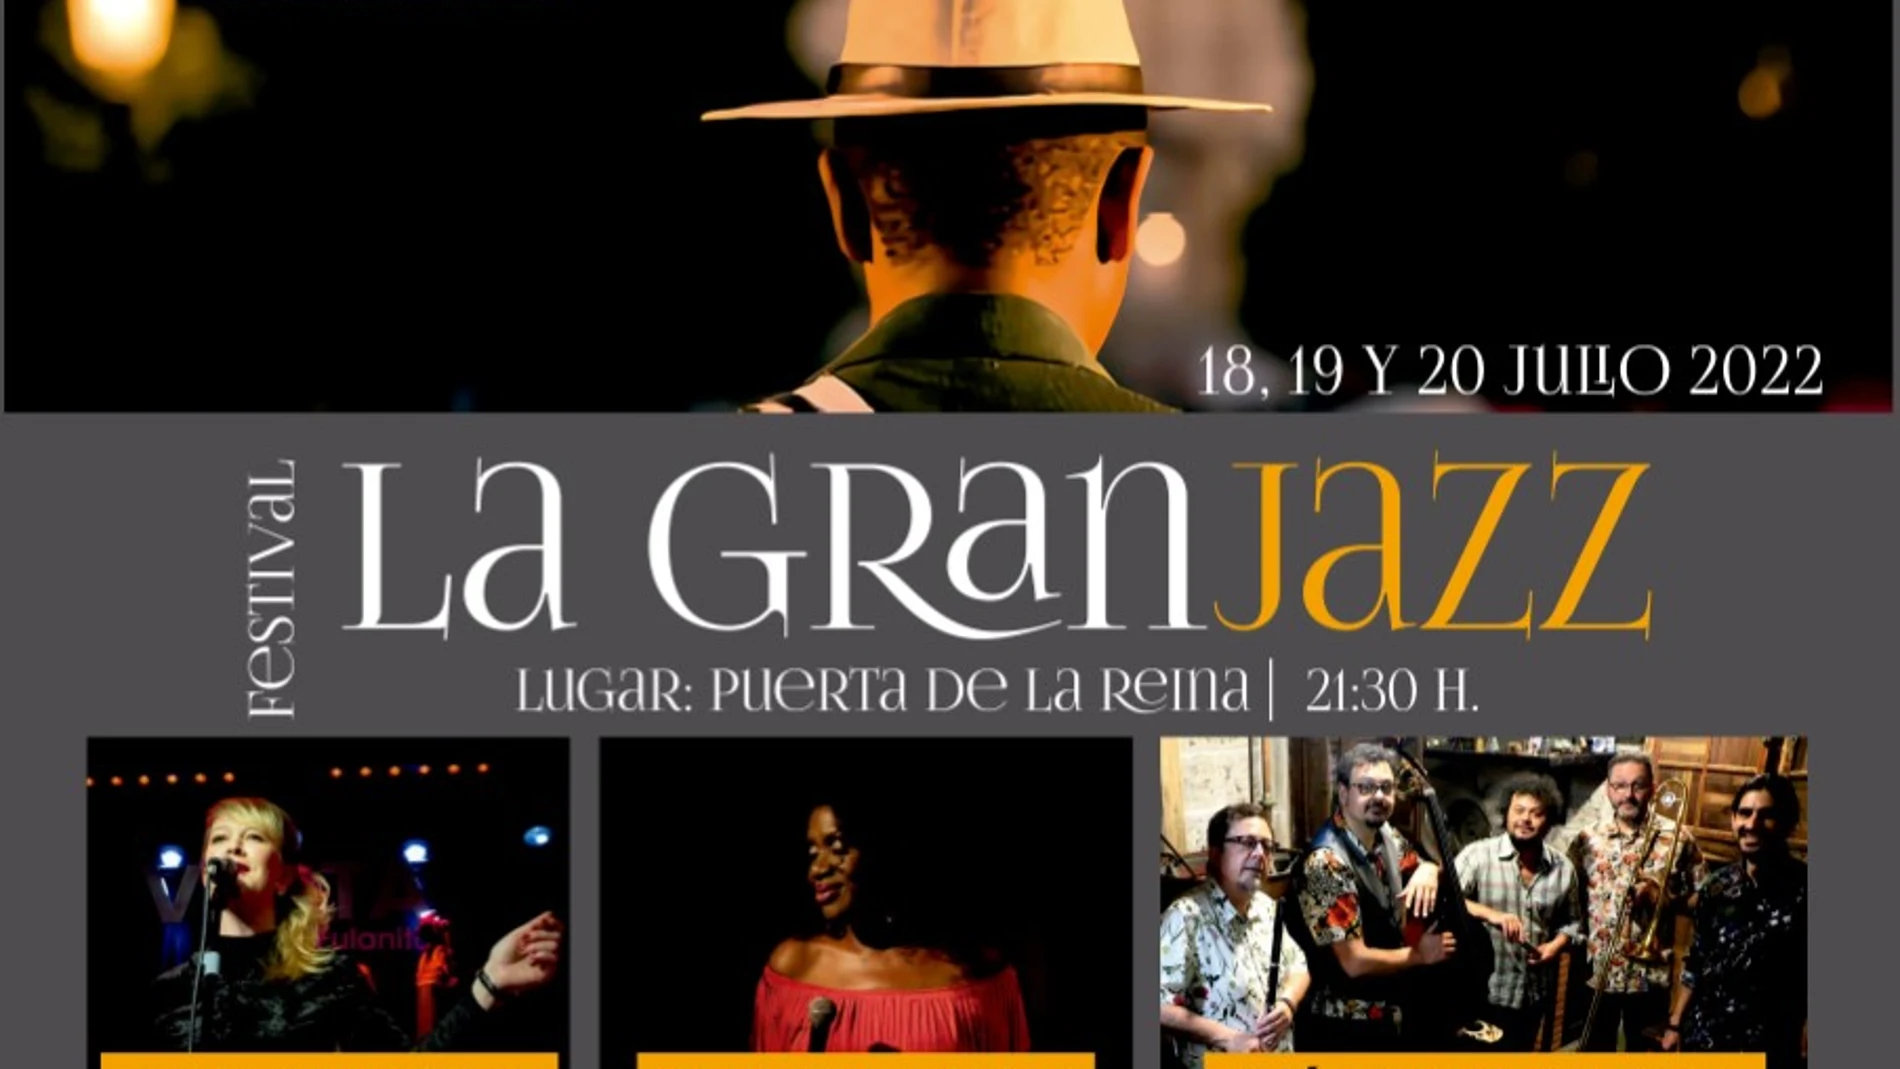 Cartel anunciador del Festival La GranJazz